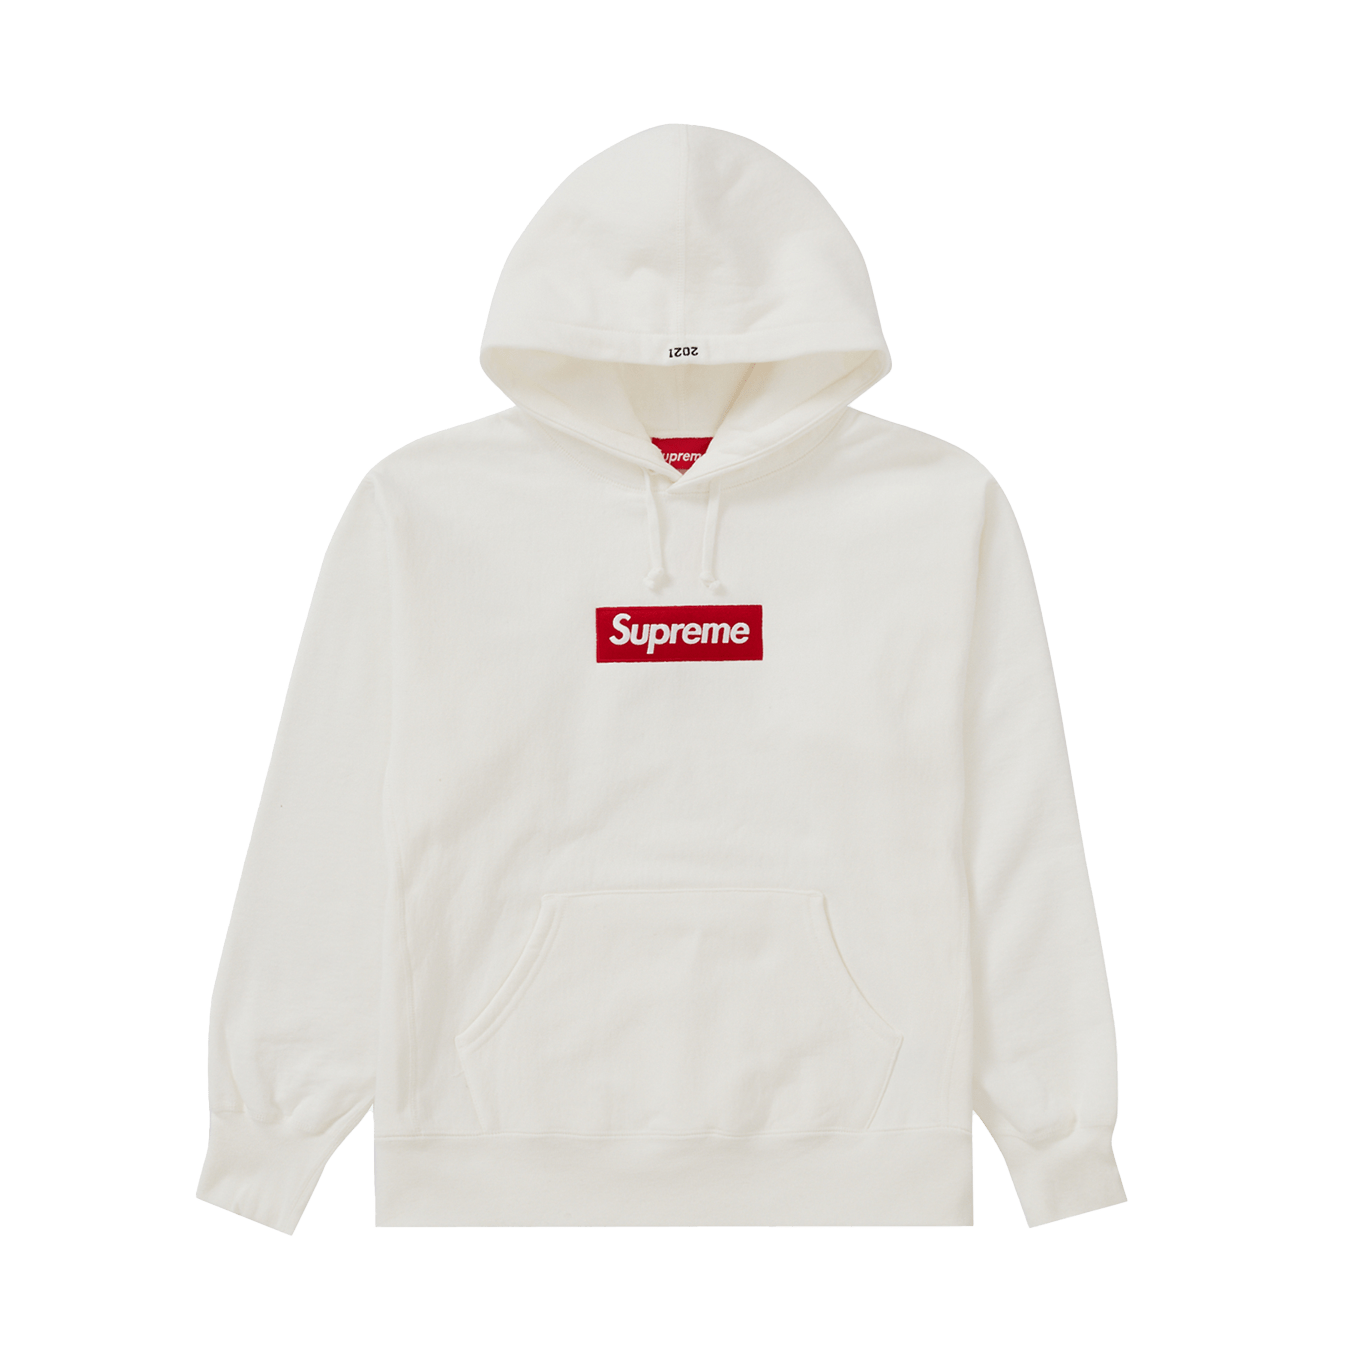 新品未使用半タグ付きSupreme Box Logo Hooded Sweatshirt M